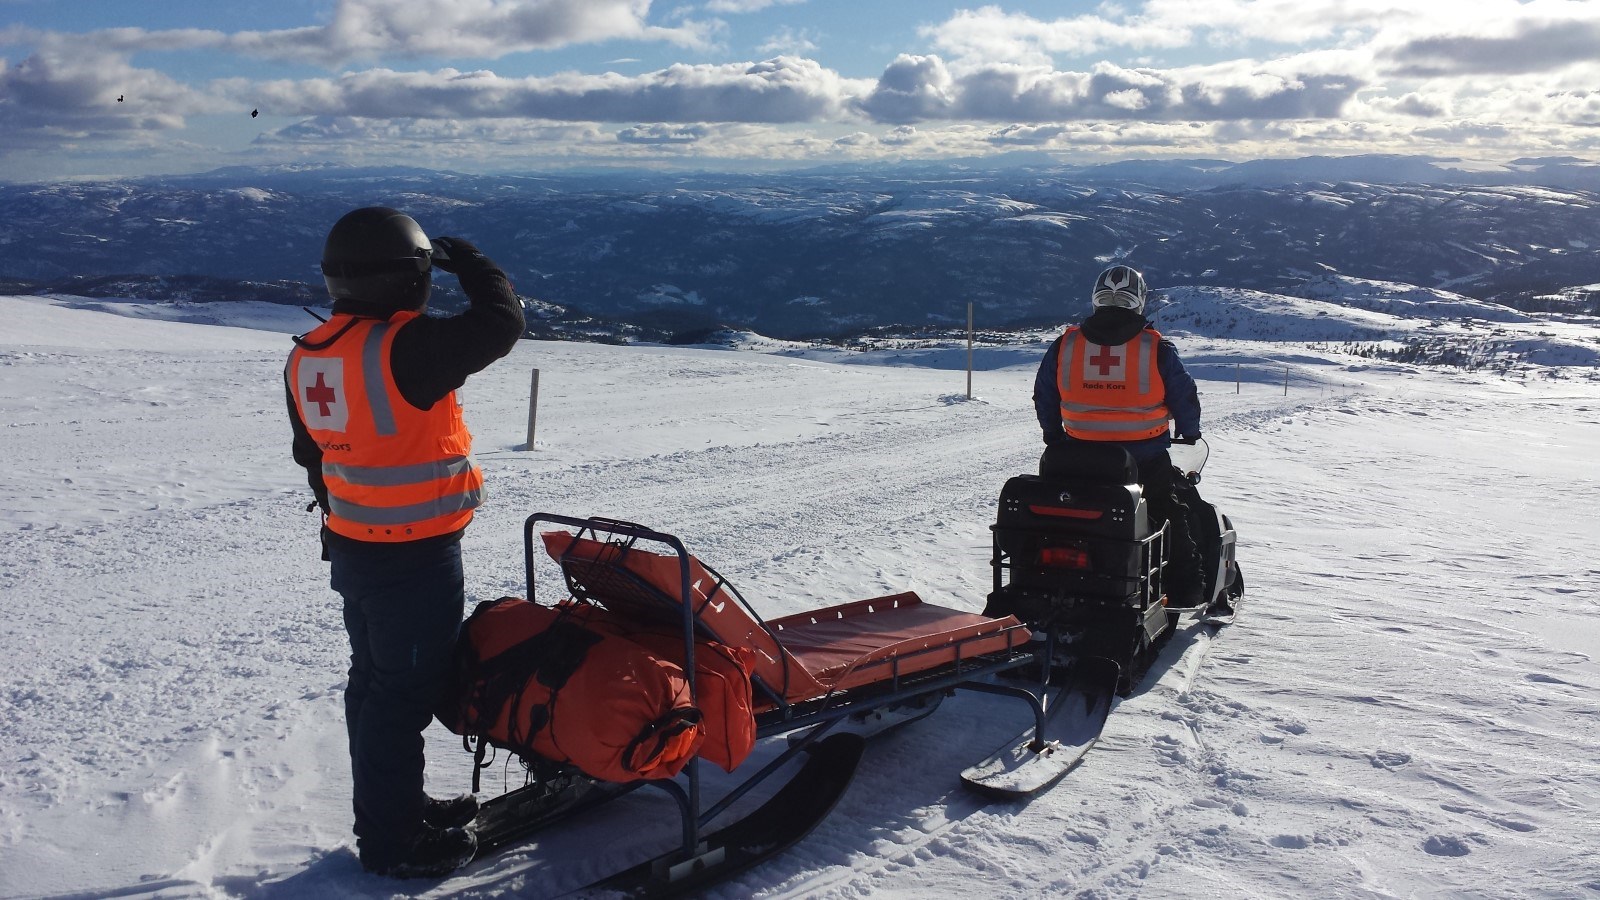 To menn far hjelpekorpsett på scooter med hvitkledd fjelllandskap i bakgrunn